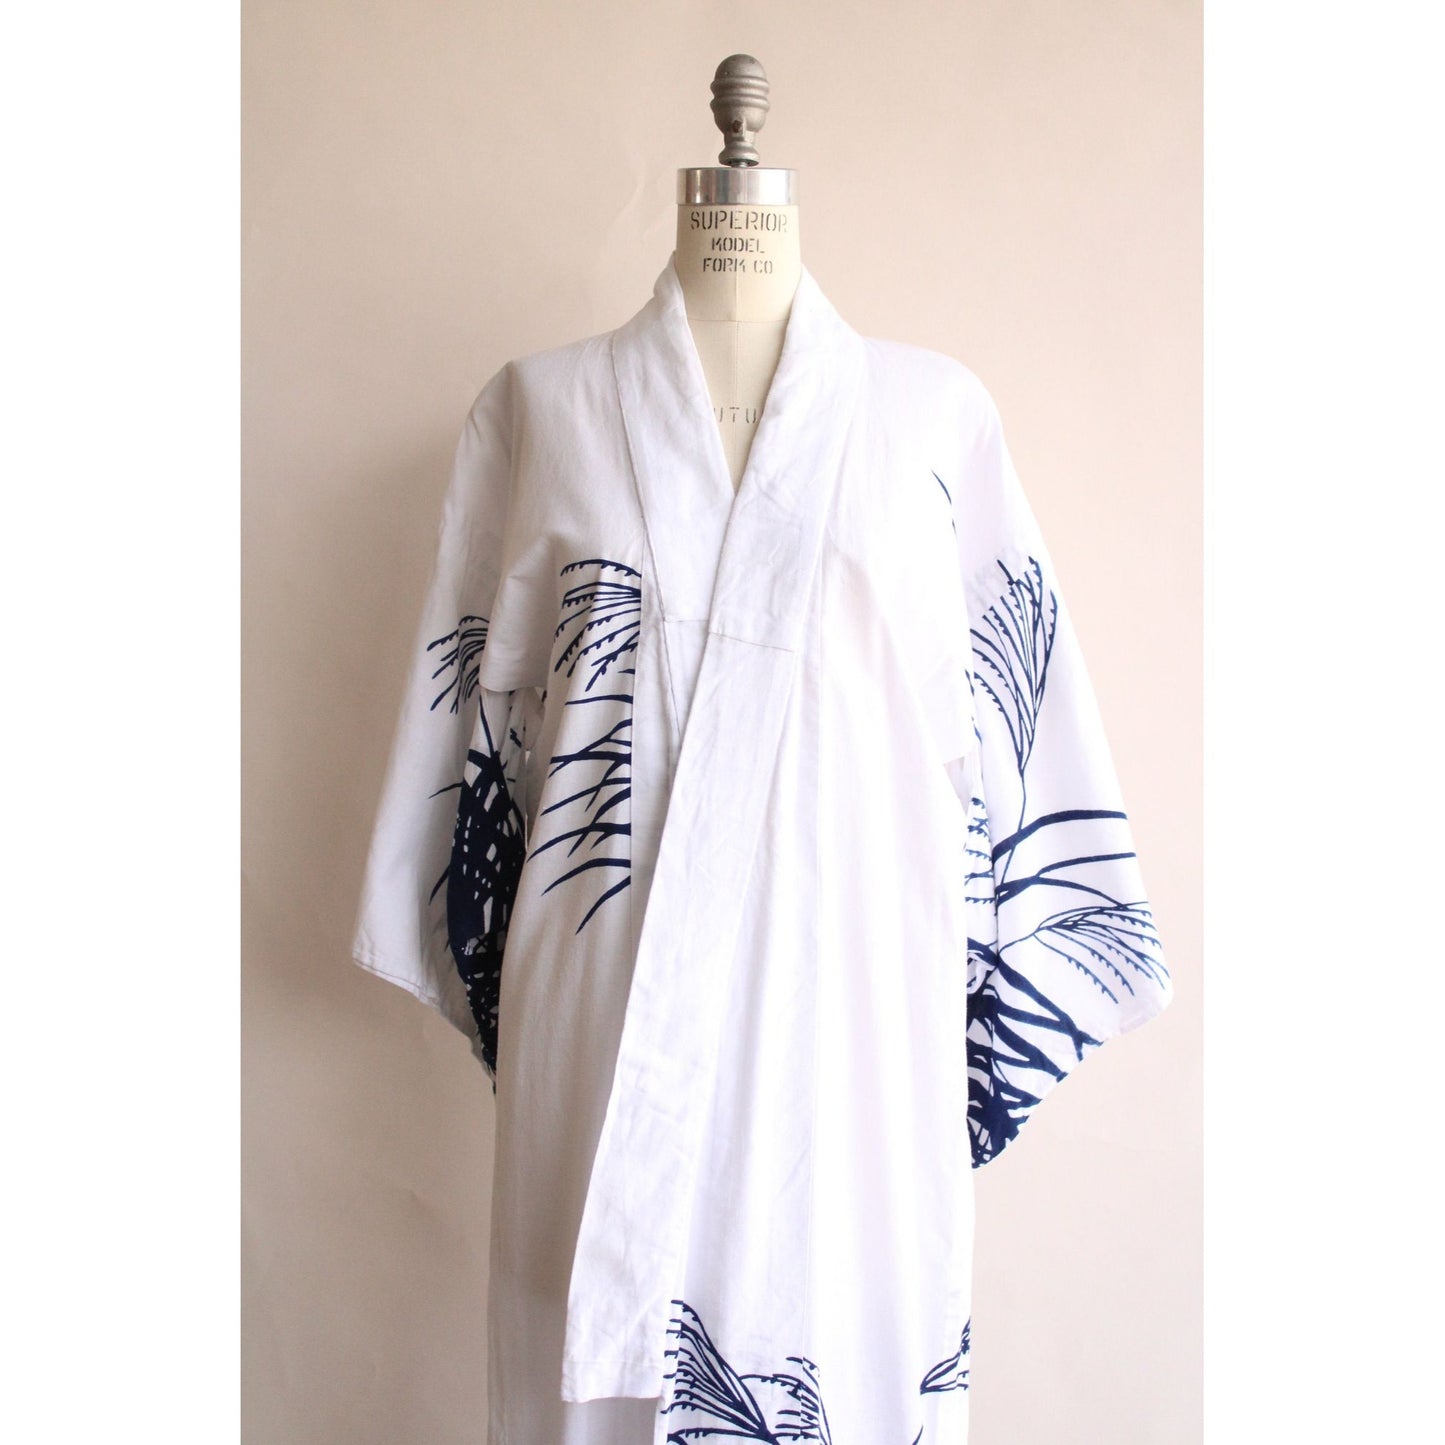 Vintage 1980s 1990s Kimono / White and Blue Cotton Kimono Robe